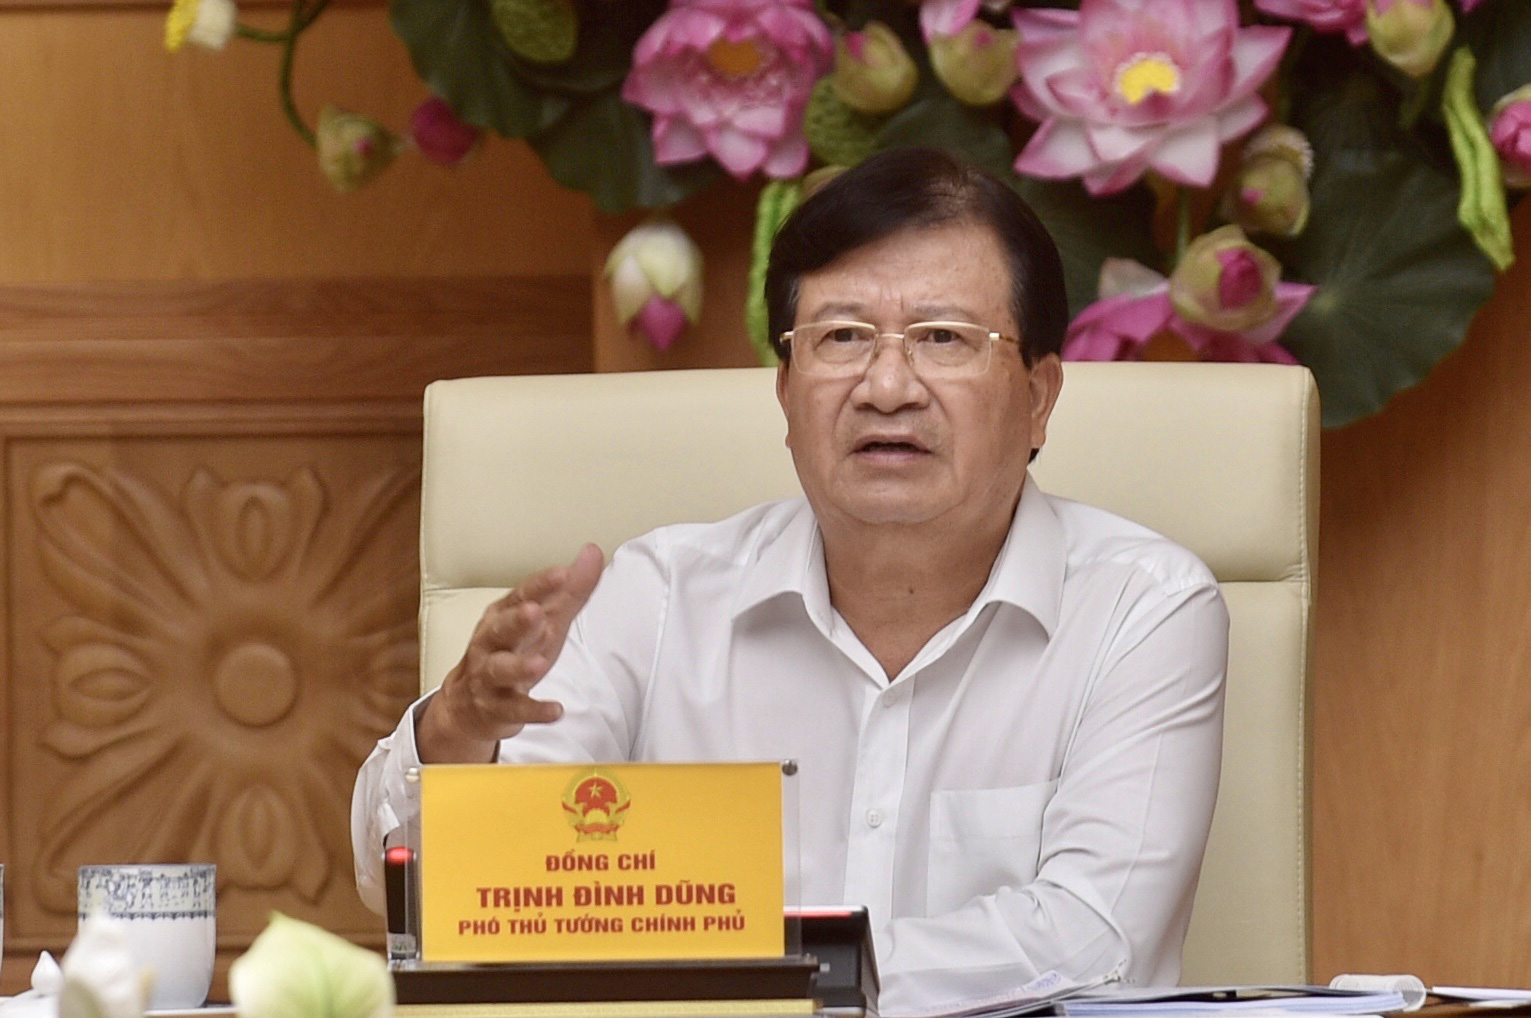 Phó Thủ tướng Trịnh Đình Dũng: Phải đánh giá toàn diện các yếu tố khi lập quy hoạch vùng ĐBSCL - Ảnh 1.